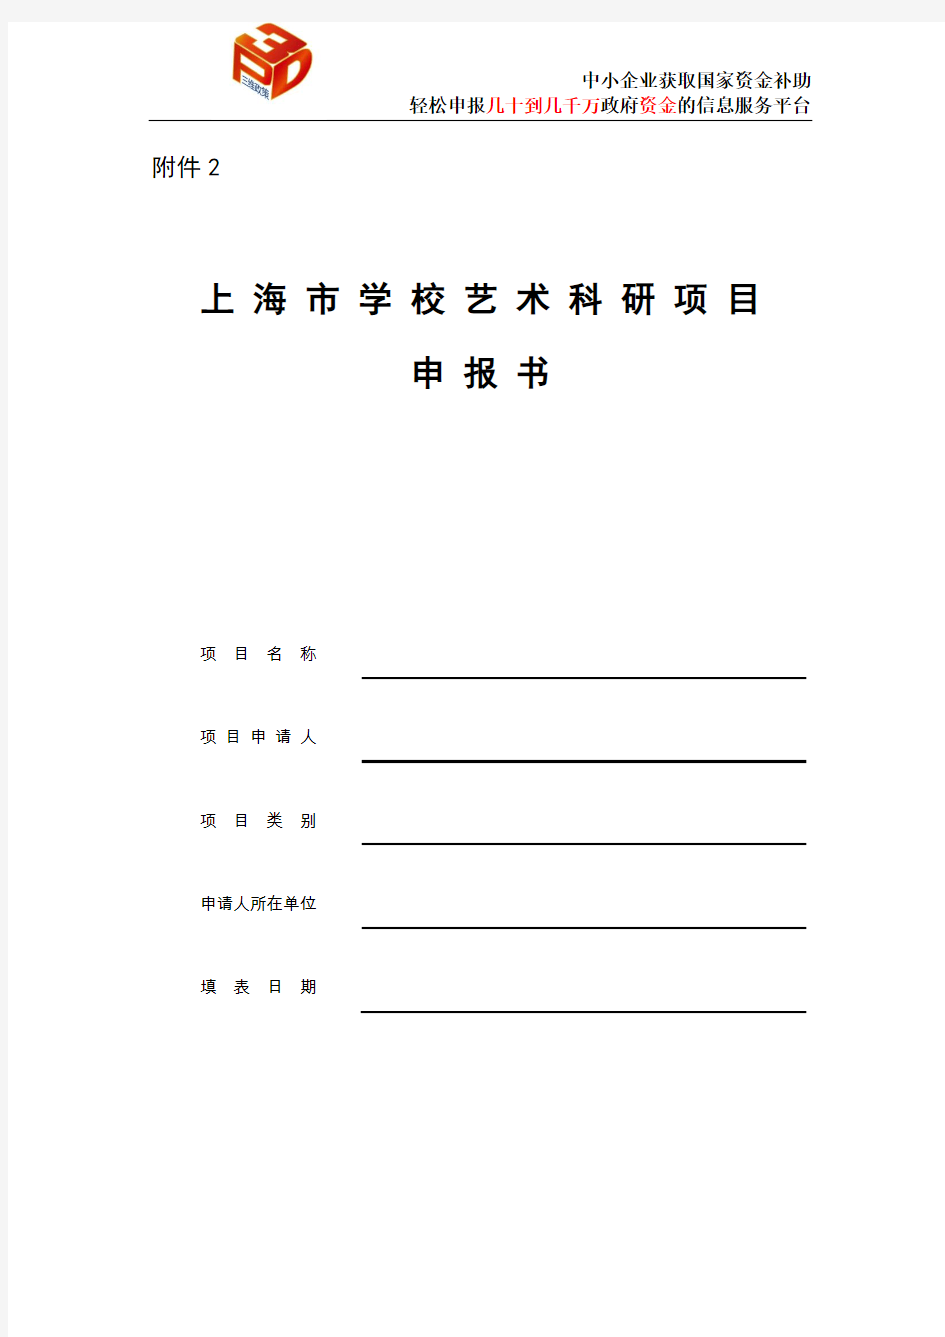 上海市学校艺术科研项目申报书 (1)